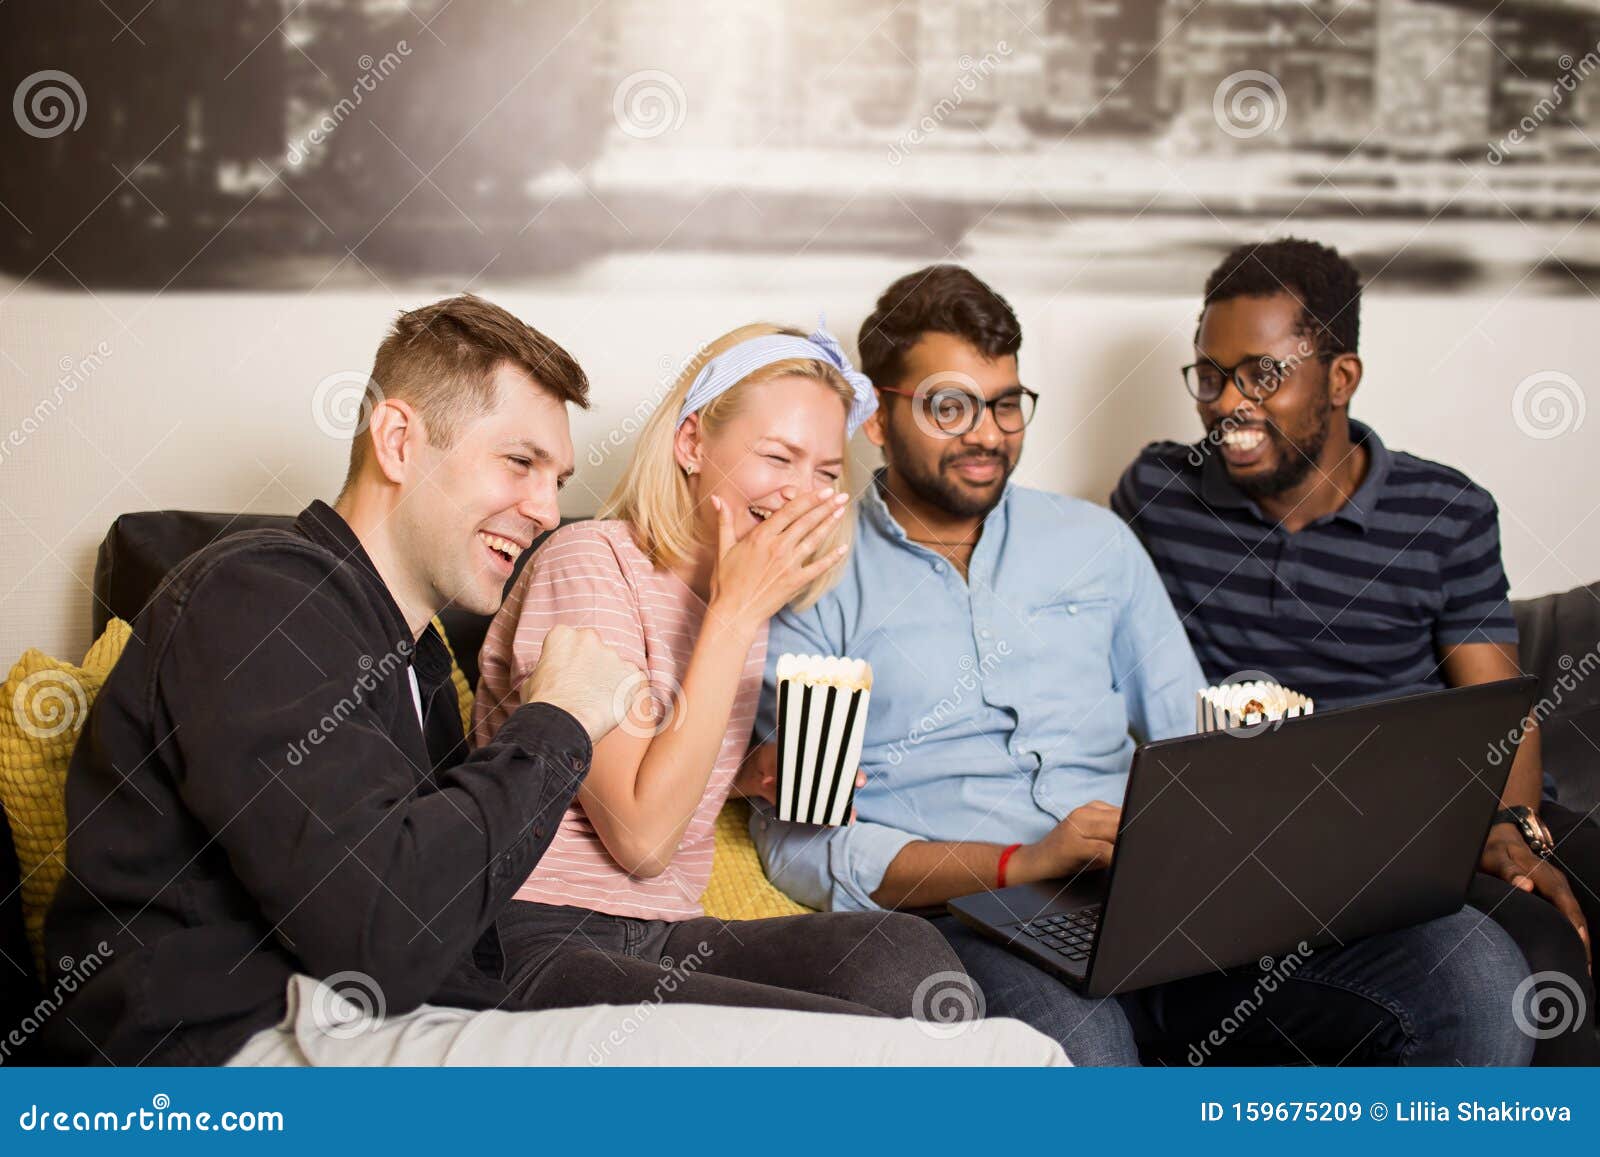 Een Groep Vrienden Die De Laptop Kijken En Stock Afbeelding - Image of vrienden, plezier: 159675209